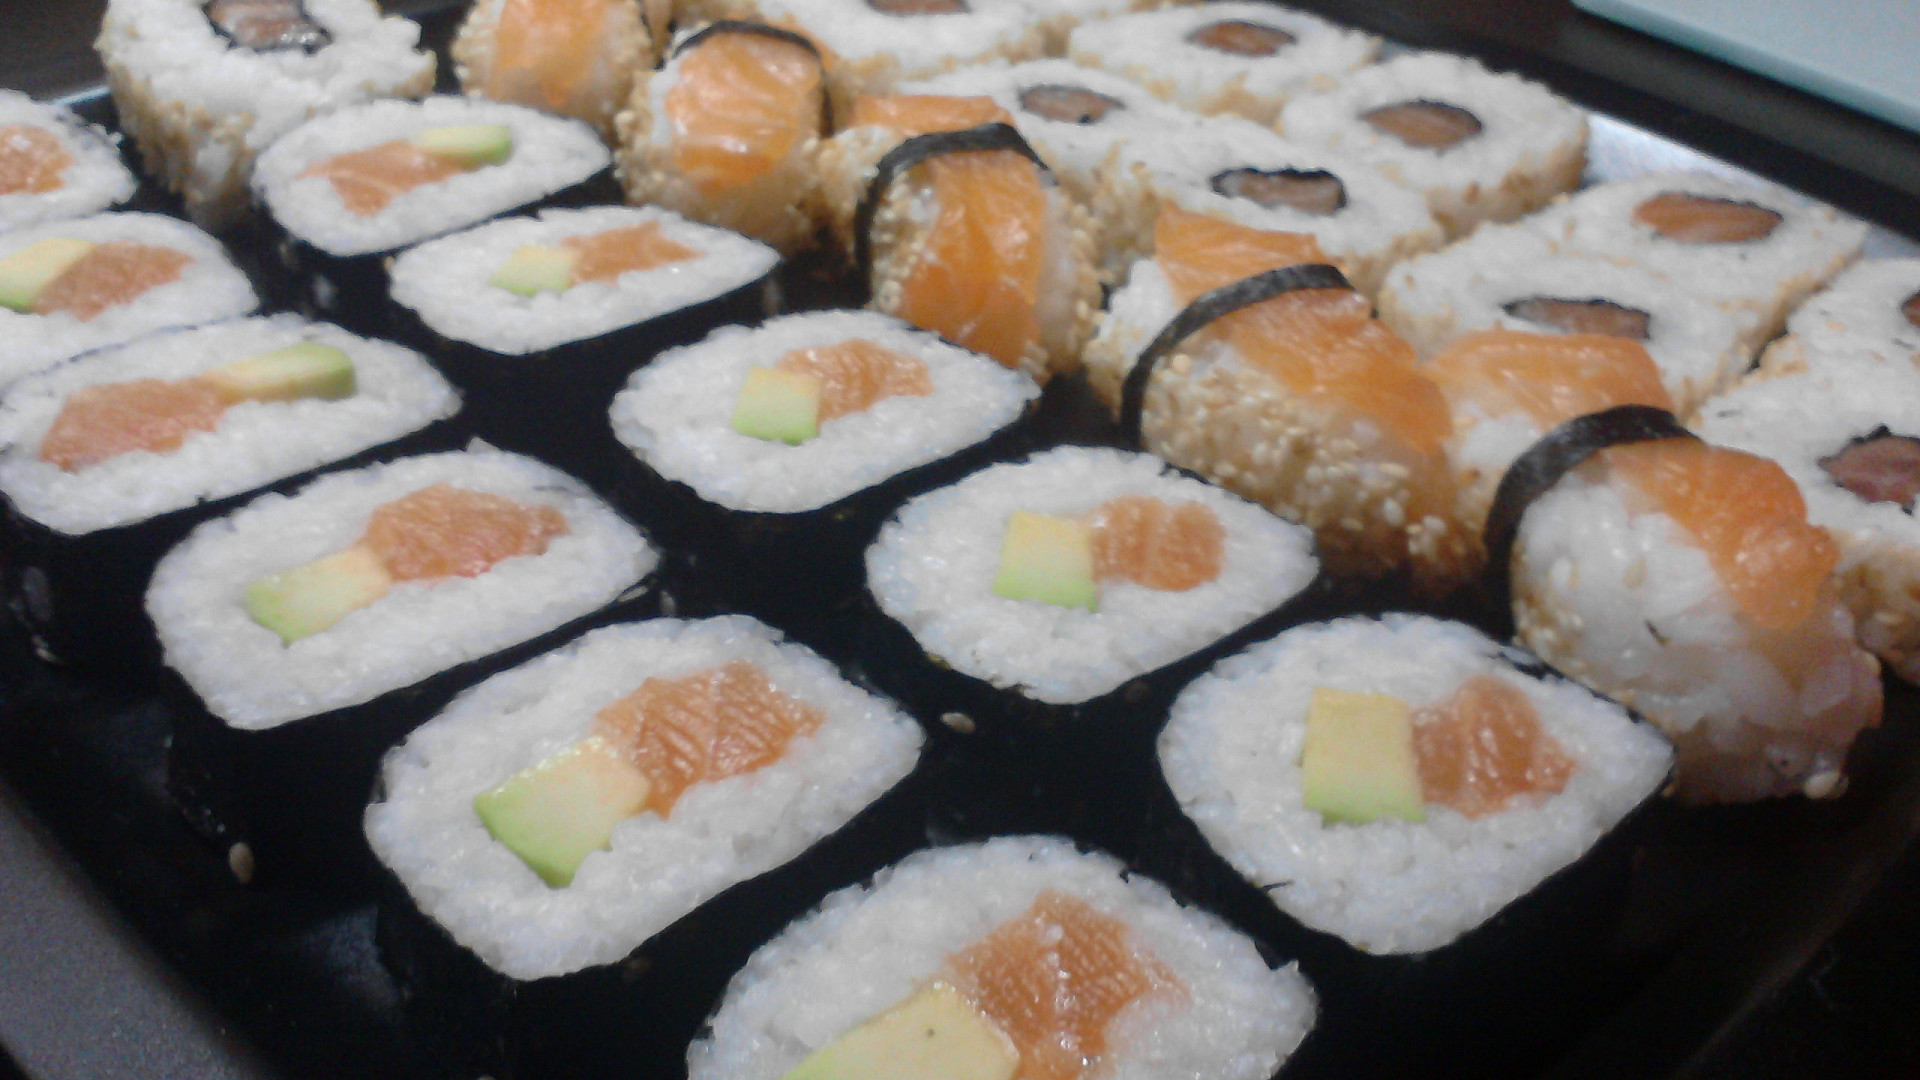 jak se jí japonské jídlo sushi? wasabi a sójovka se nemíchají, také pozor na zázvor